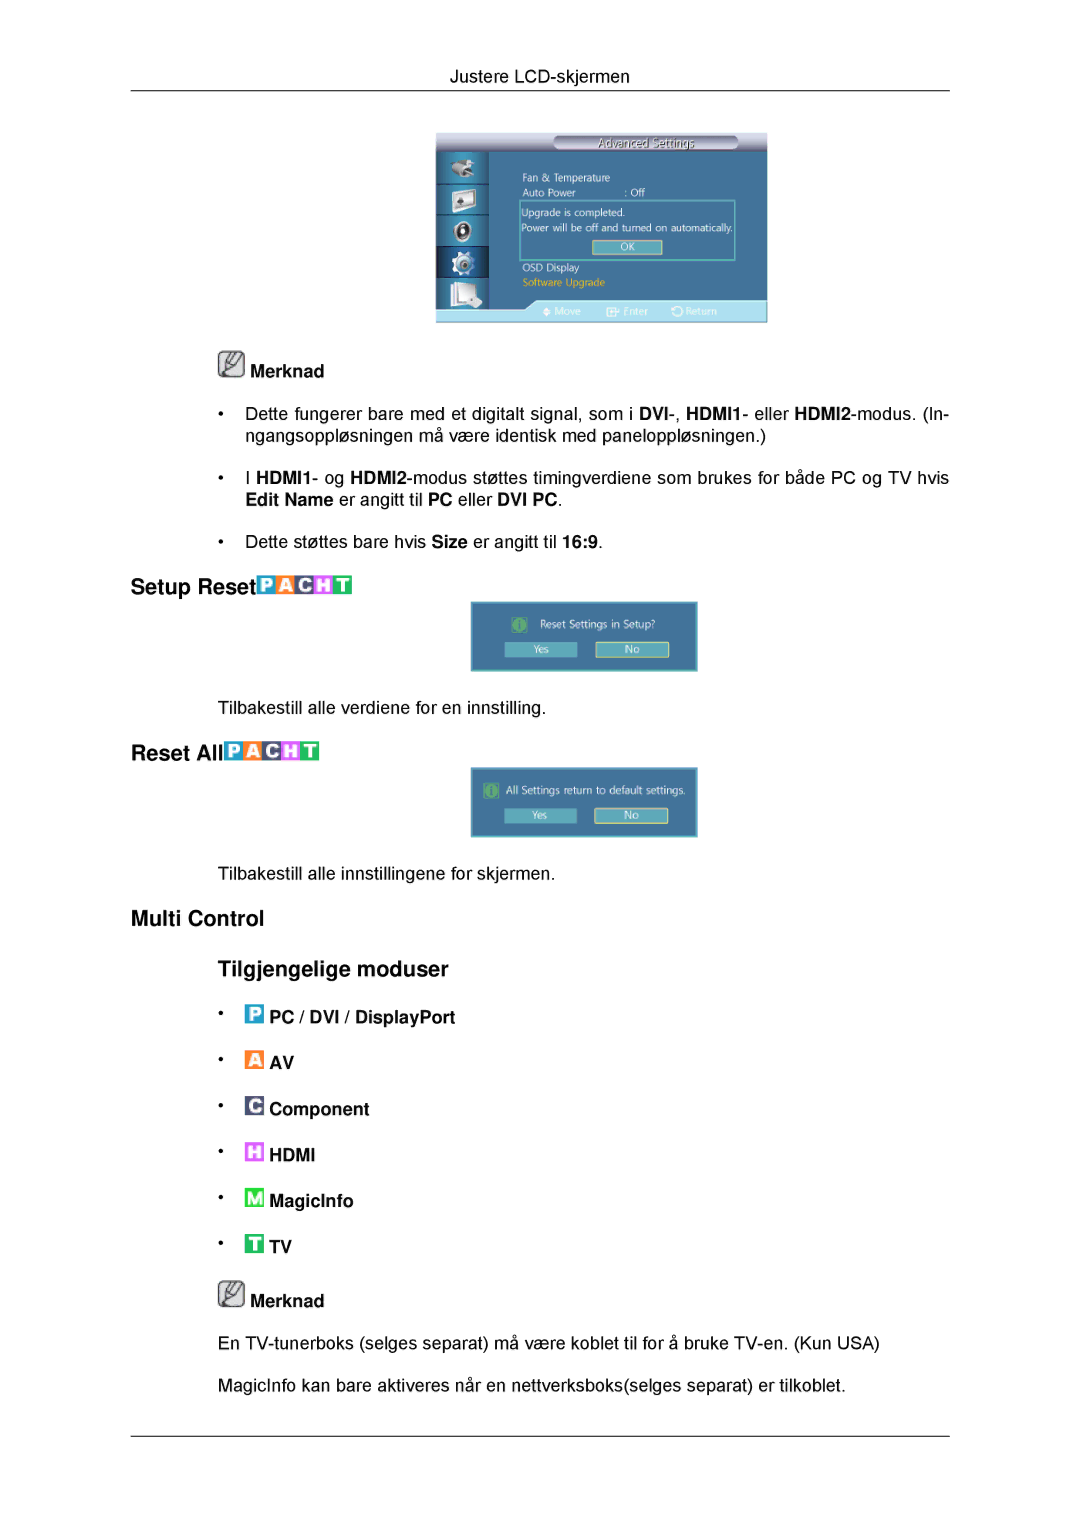 Samsung LH70CSBPLBC/EN manual Setup Reset, Reset All, Multi Control Tilgjengelige moduser 